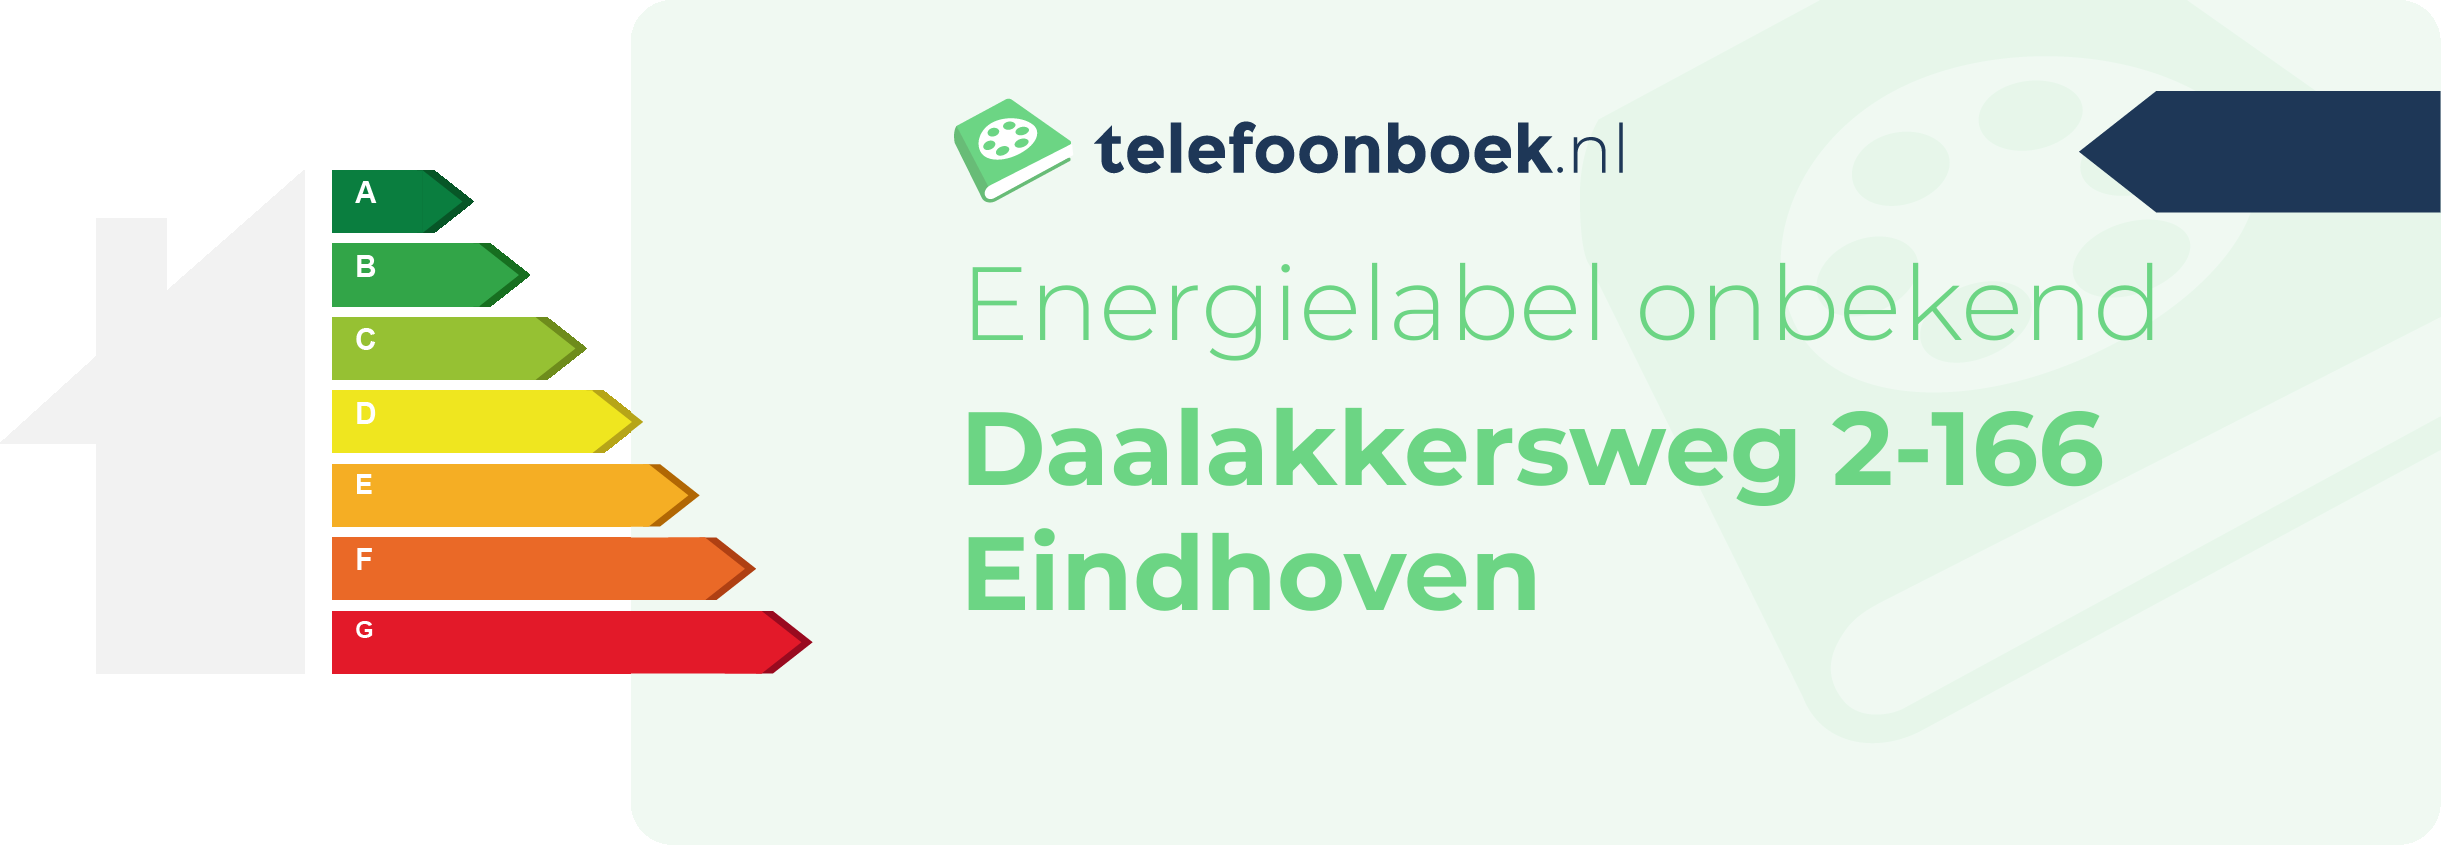 Energielabel Daalakkersweg 2-166 Eindhoven